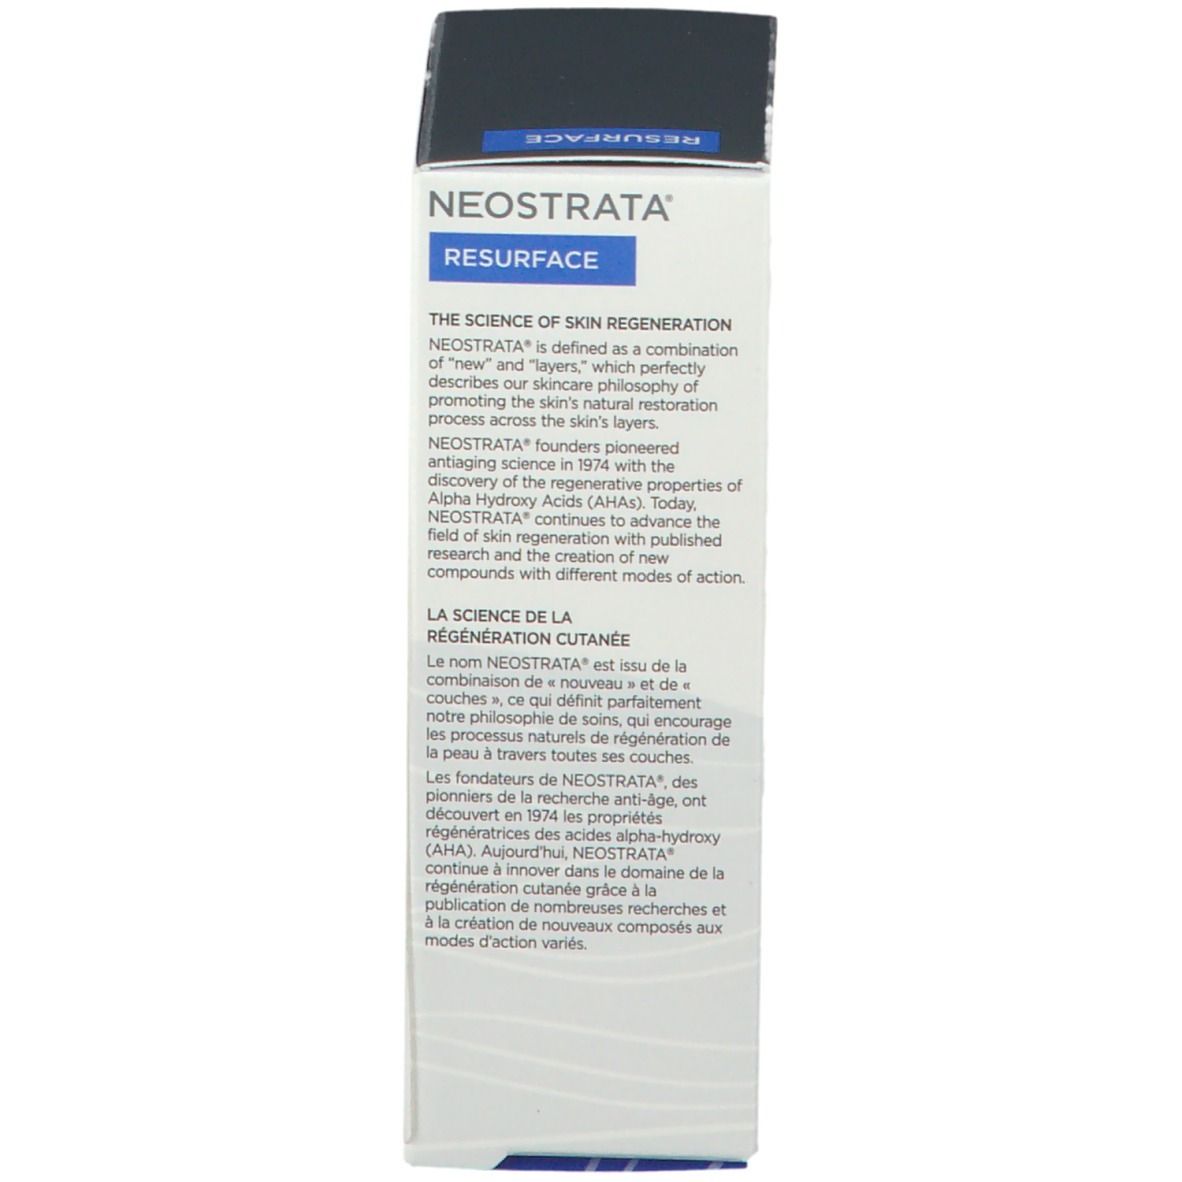 Neostrata® Face Cream Plus 15 AHA